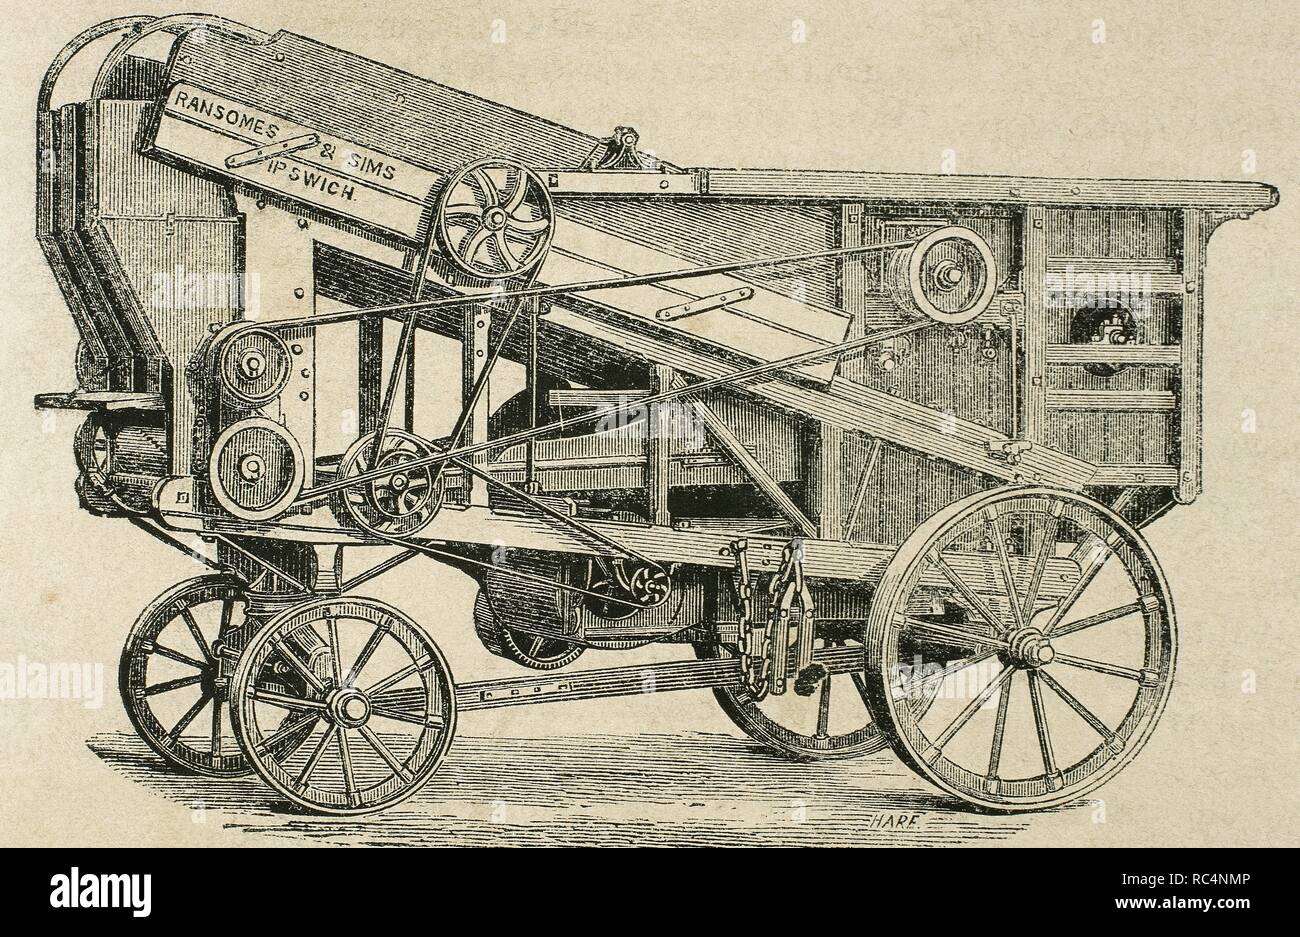 Industrielle Revolution. Landwirtschaftliche Maschinen. Dreschmaschine. H-Serie. Kupferstich von Haure. La Ilustracion Espanola y Americana, 1870. Stockfoto